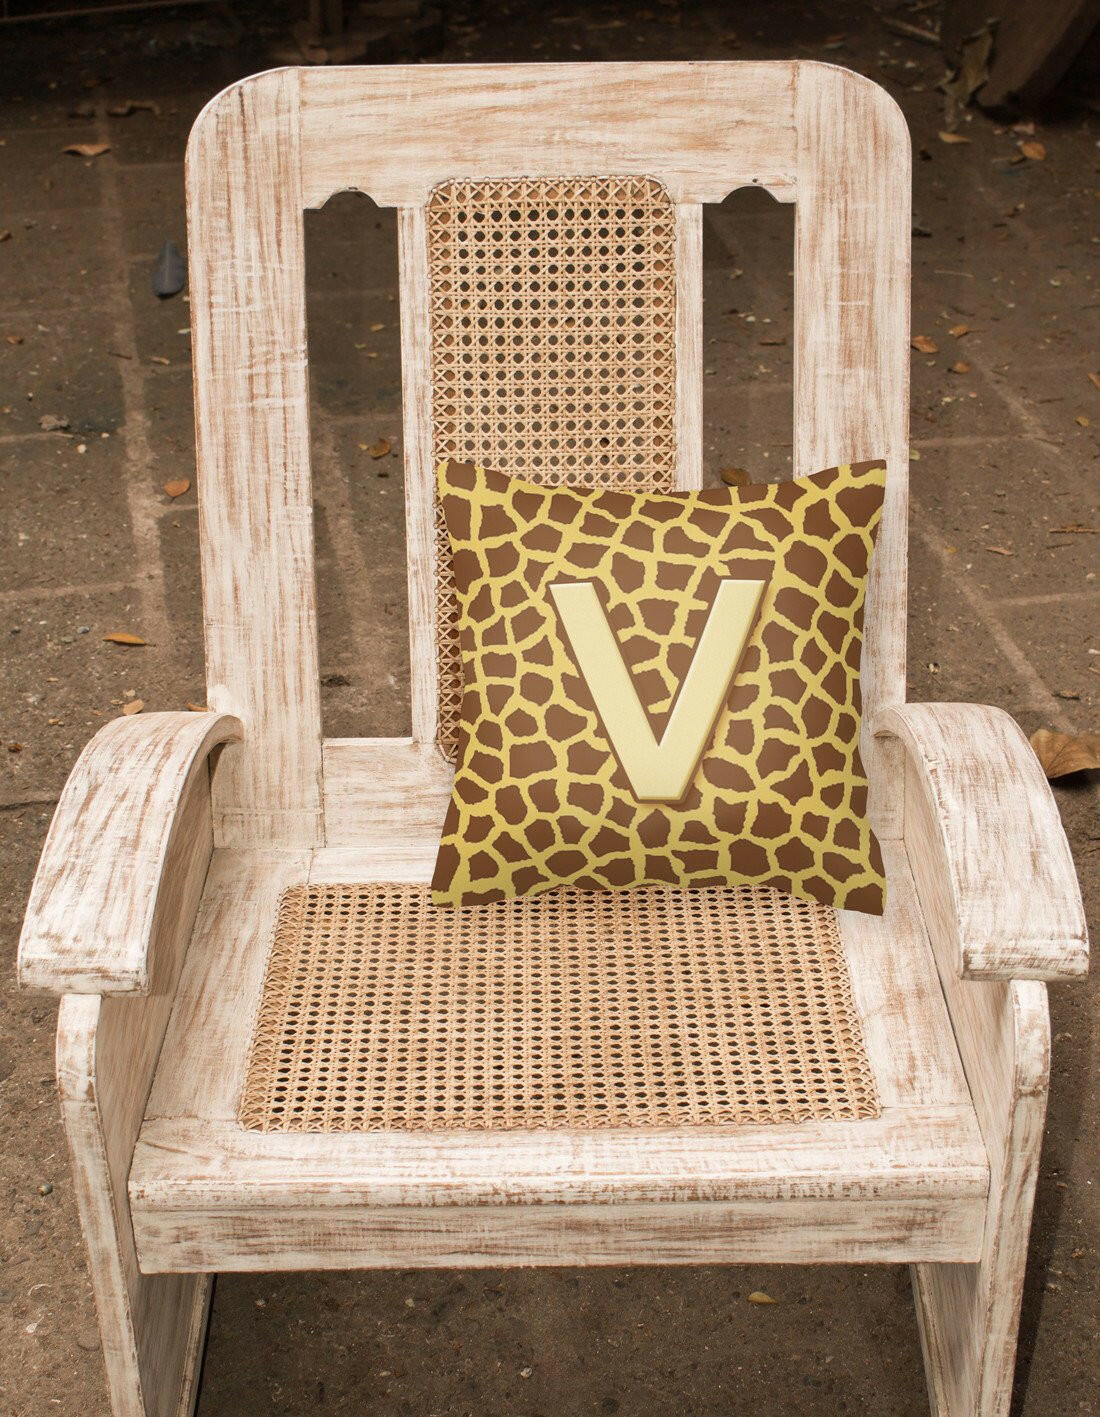 Monogram Initial V Giraffe Decorative   Canvas Fabric Pillow CJ1025 - the-store.com